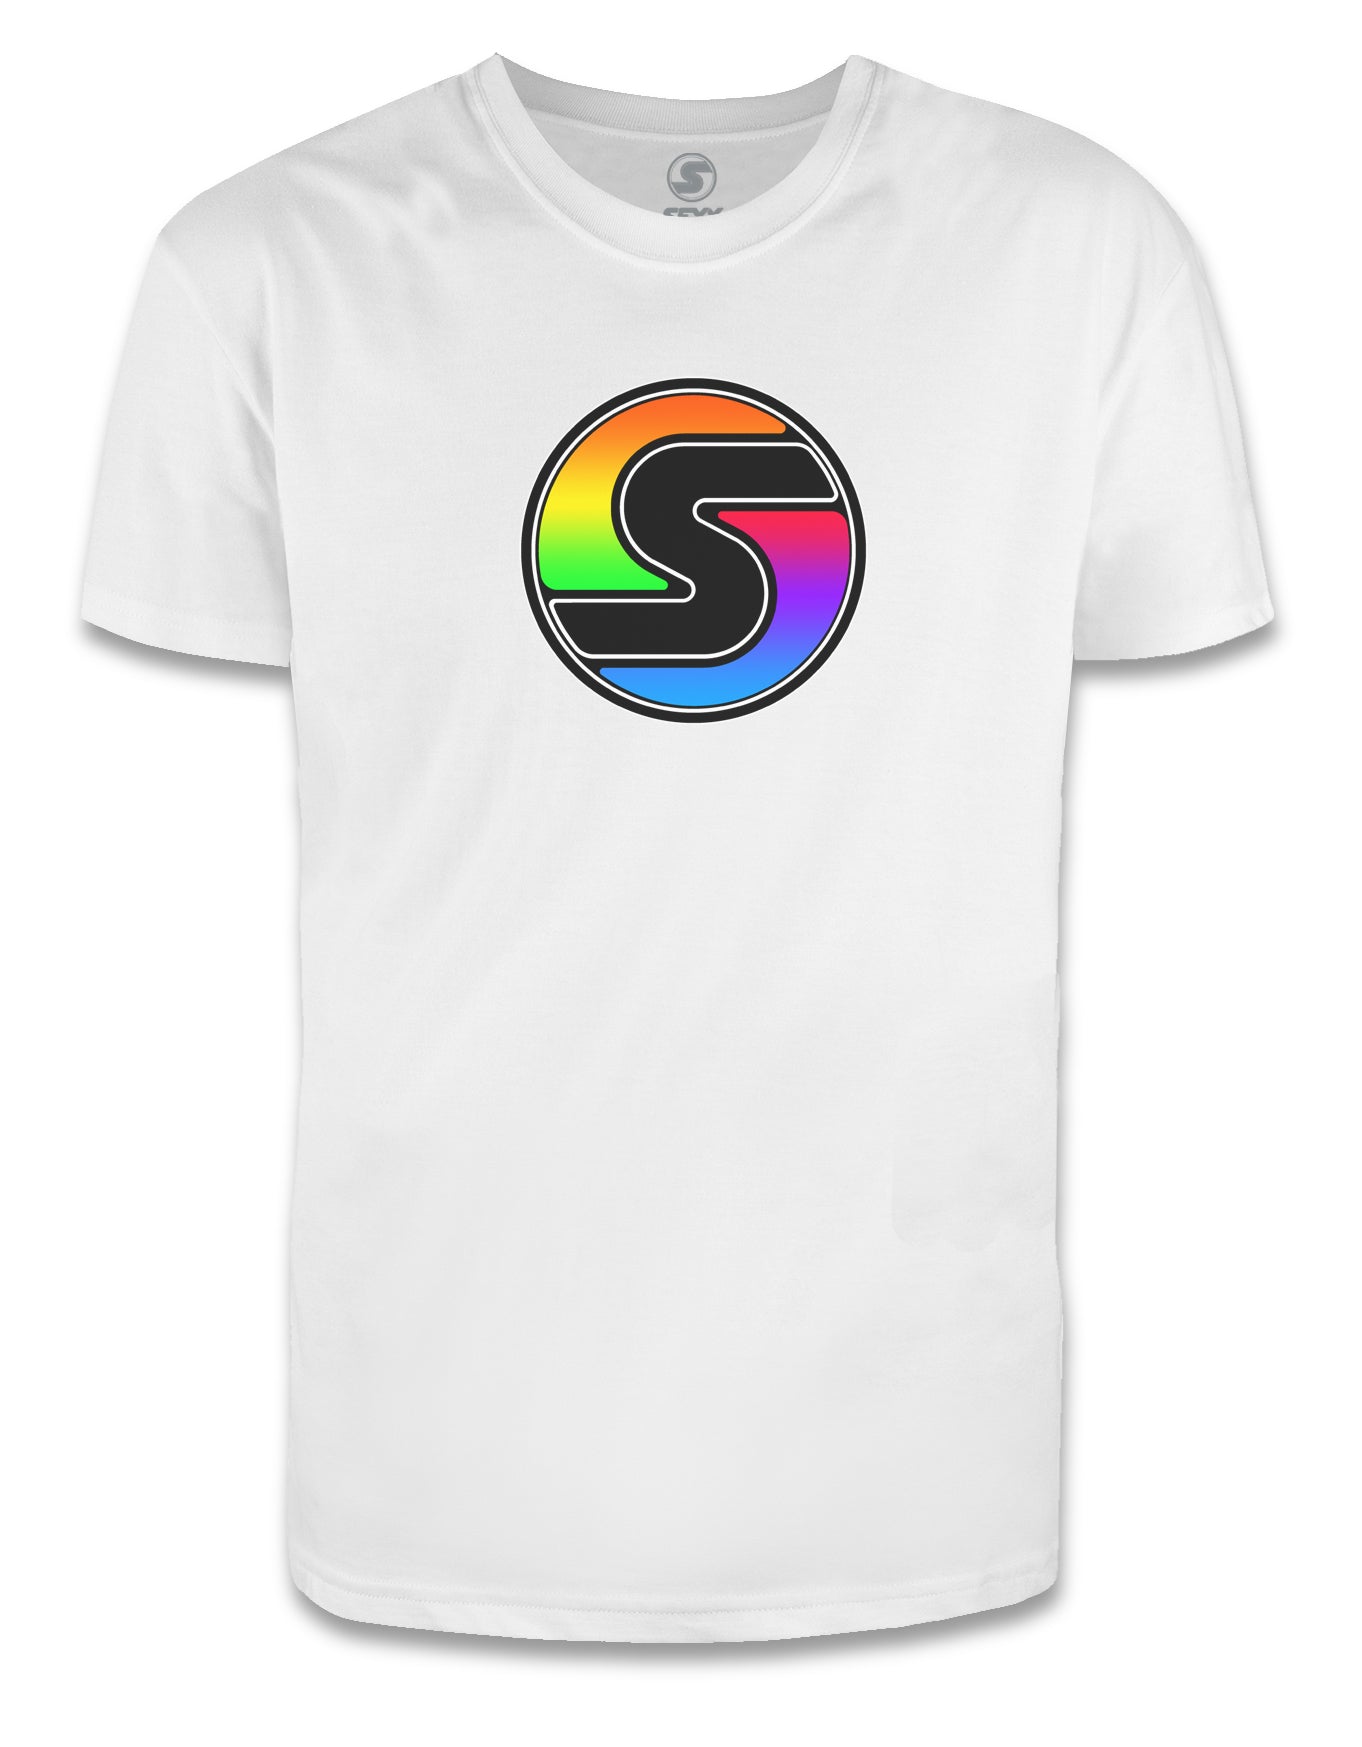 Women's Rainbow "S" Logo Tee